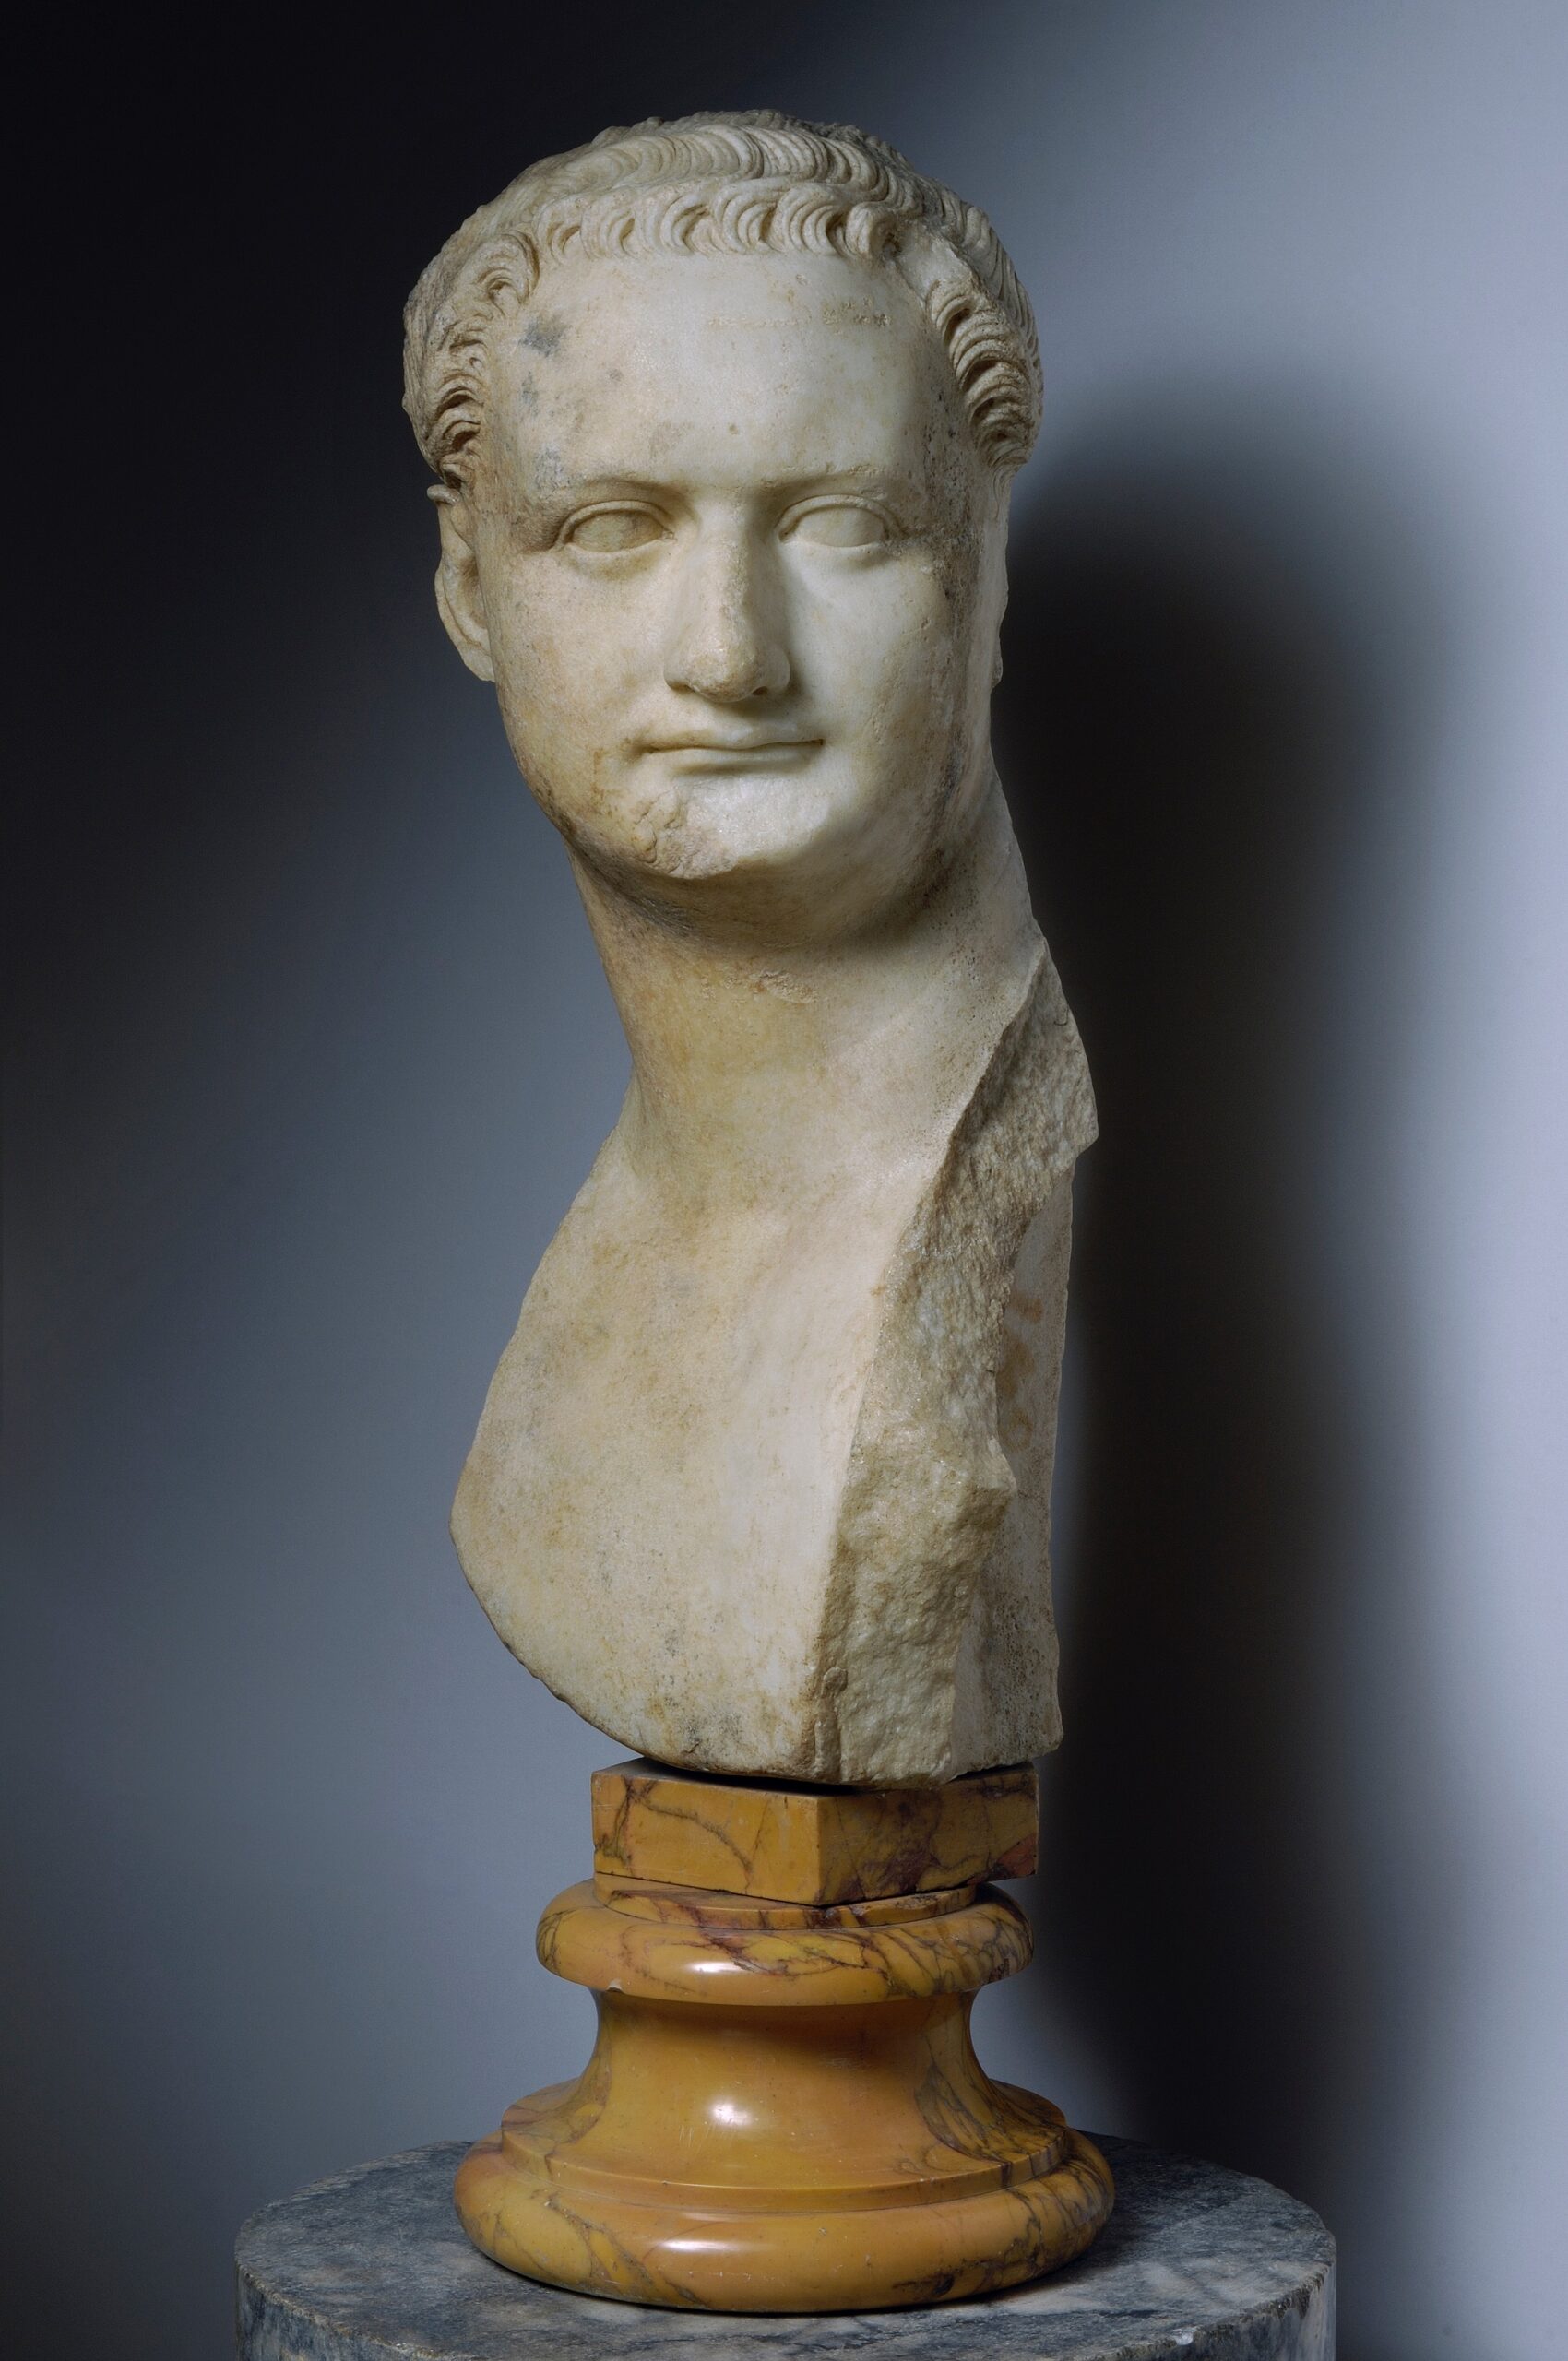 Portrait de Domitien. Marbre. Rome, Musei Capitolini, inv. S 1156. © Roma Capitale, Sovrintendenza Capitolina ai Beni Culturali, Zeno Colantoni